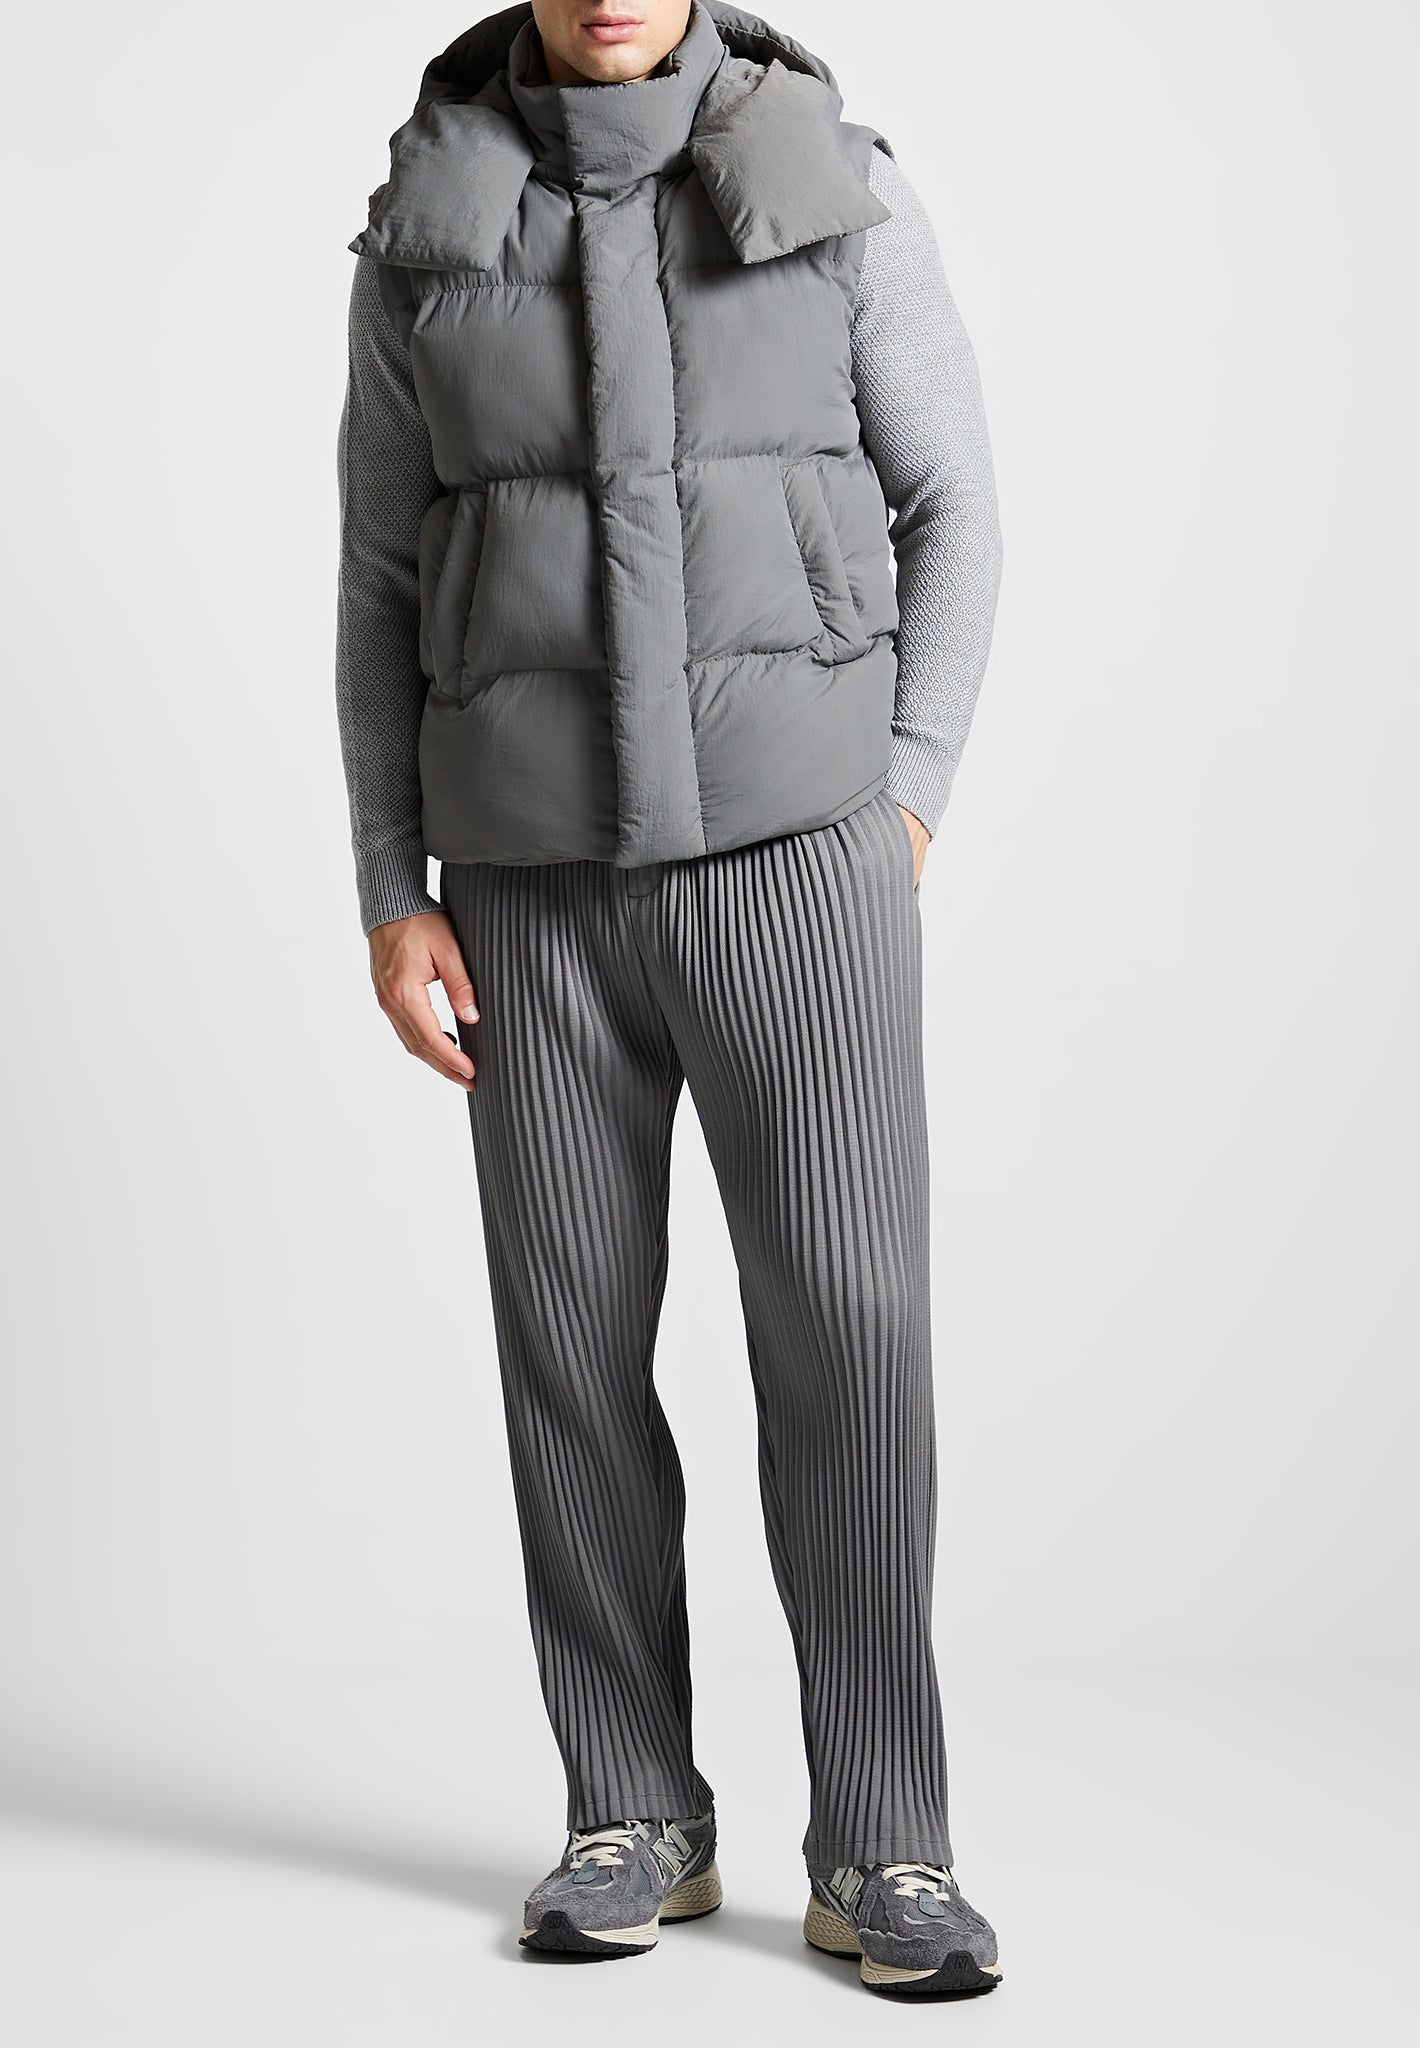 Louis Vuitton Short Pillow Puffer Wrap Coat, Beige, 42